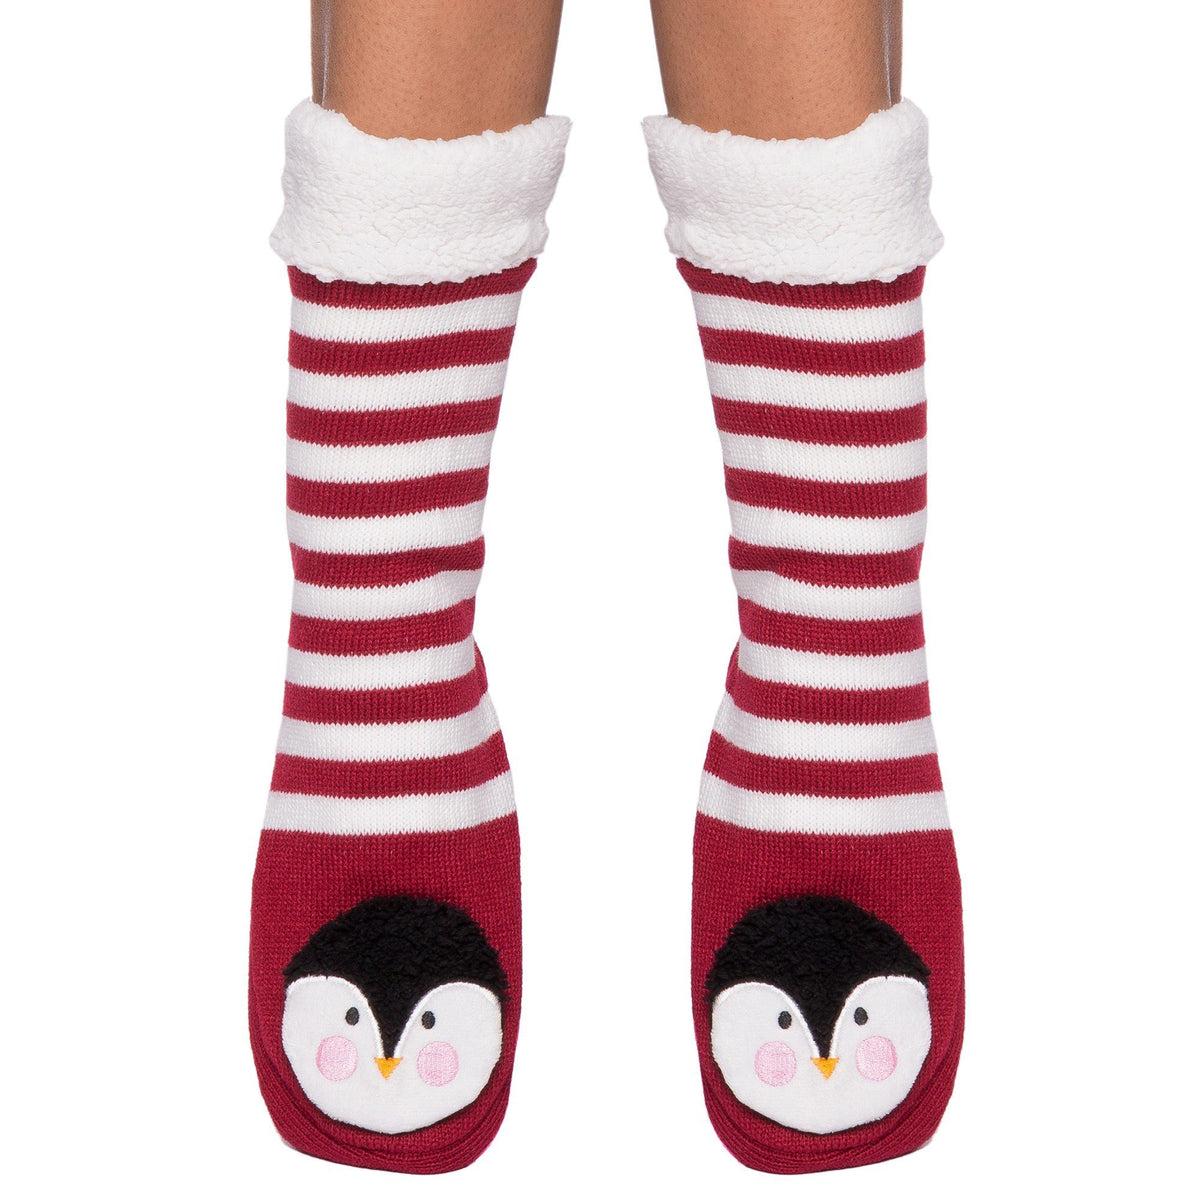 Women's Cute Knit Animal Face Slipper Socks - Penguin Plum